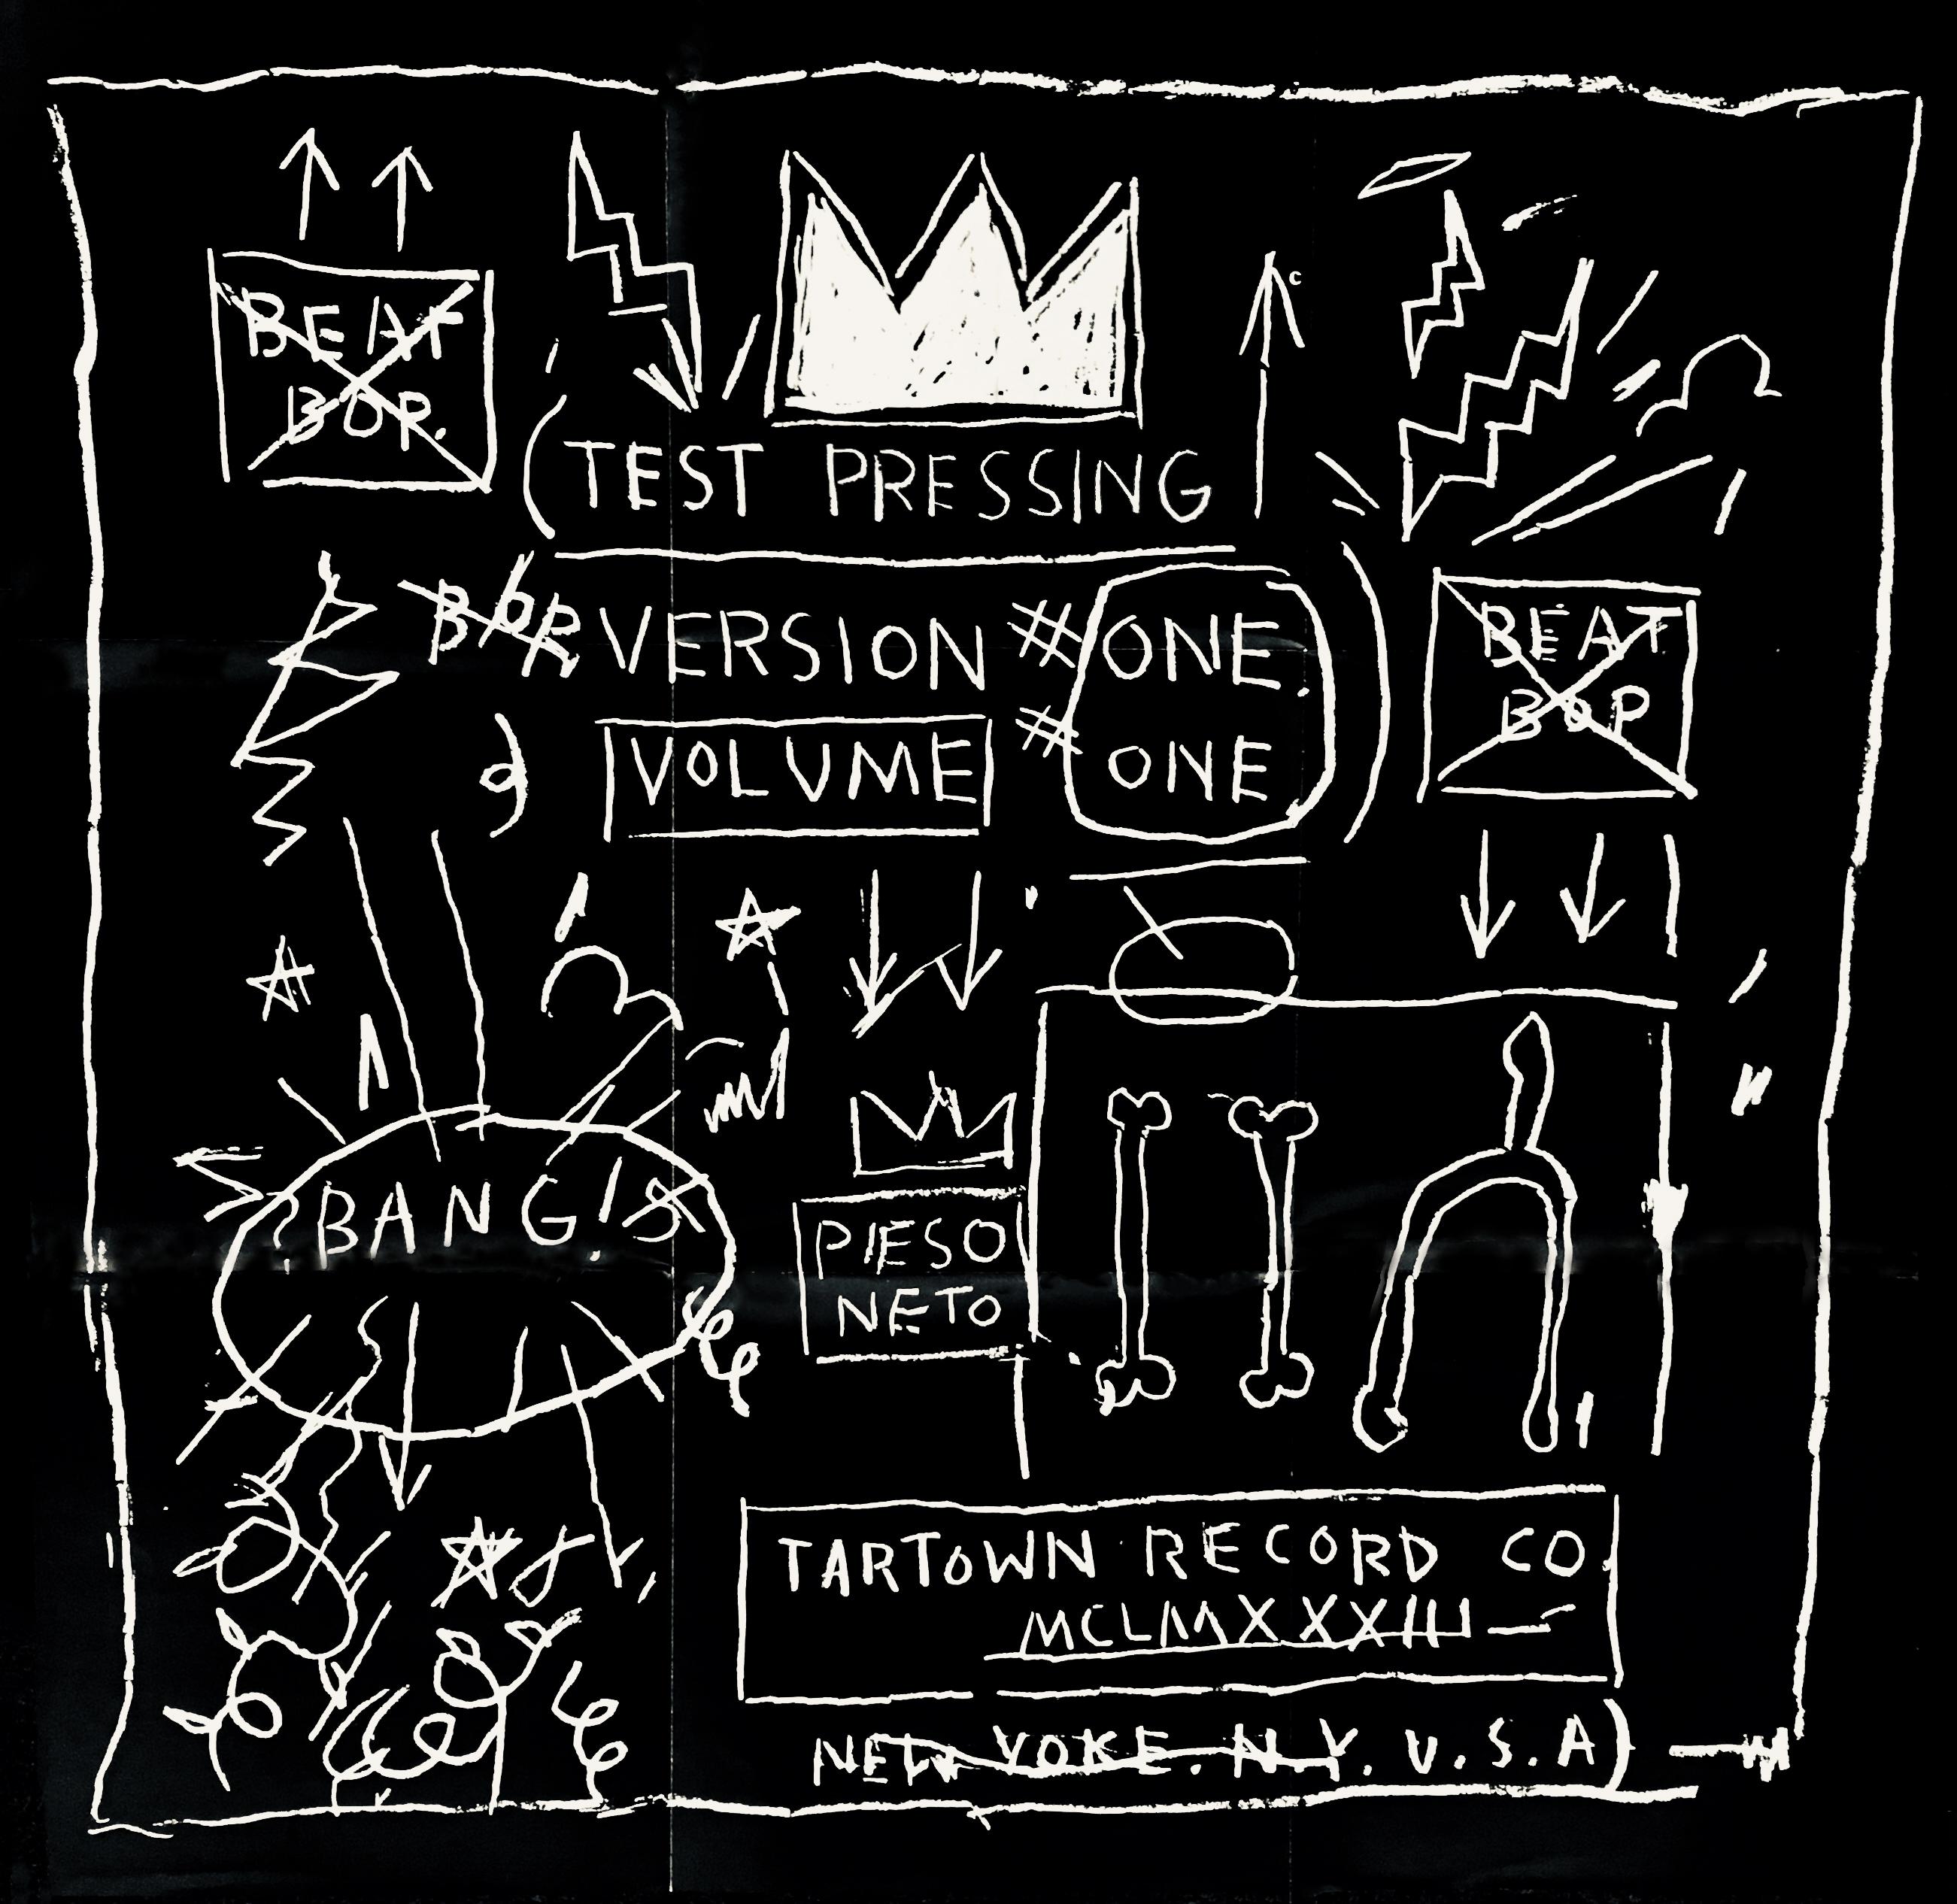 Jean-Michel Basquiat Beat Bop Record Art & Poster :
Ce disque de Basquiat Beat Bop a été publié vers 2005 et est accompagné d'une rare édition limitée d'une grande affiche dépliable recto-verso de 61 x 61 cm (24 x 24 pouces), réalisée à la manière